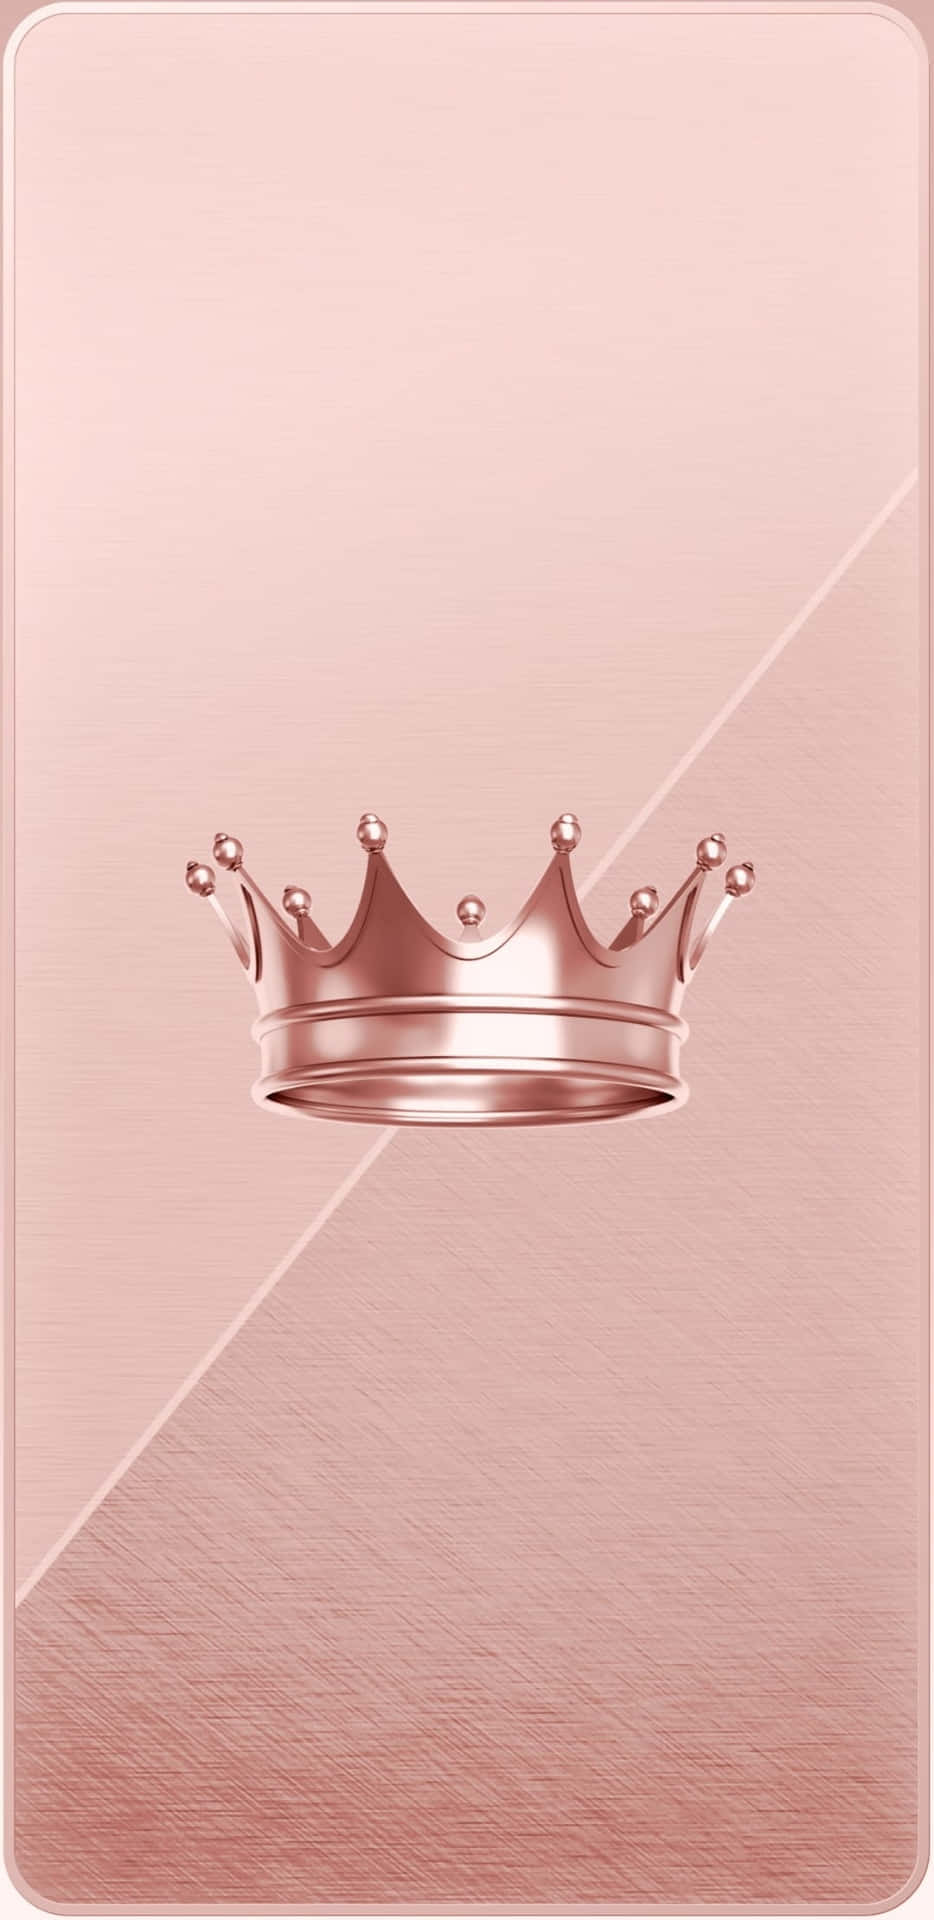 Adornadacon Una Majestuosa Corona, La Princesa Brilla Con Verdadera Belleza. Fondo de pantalla